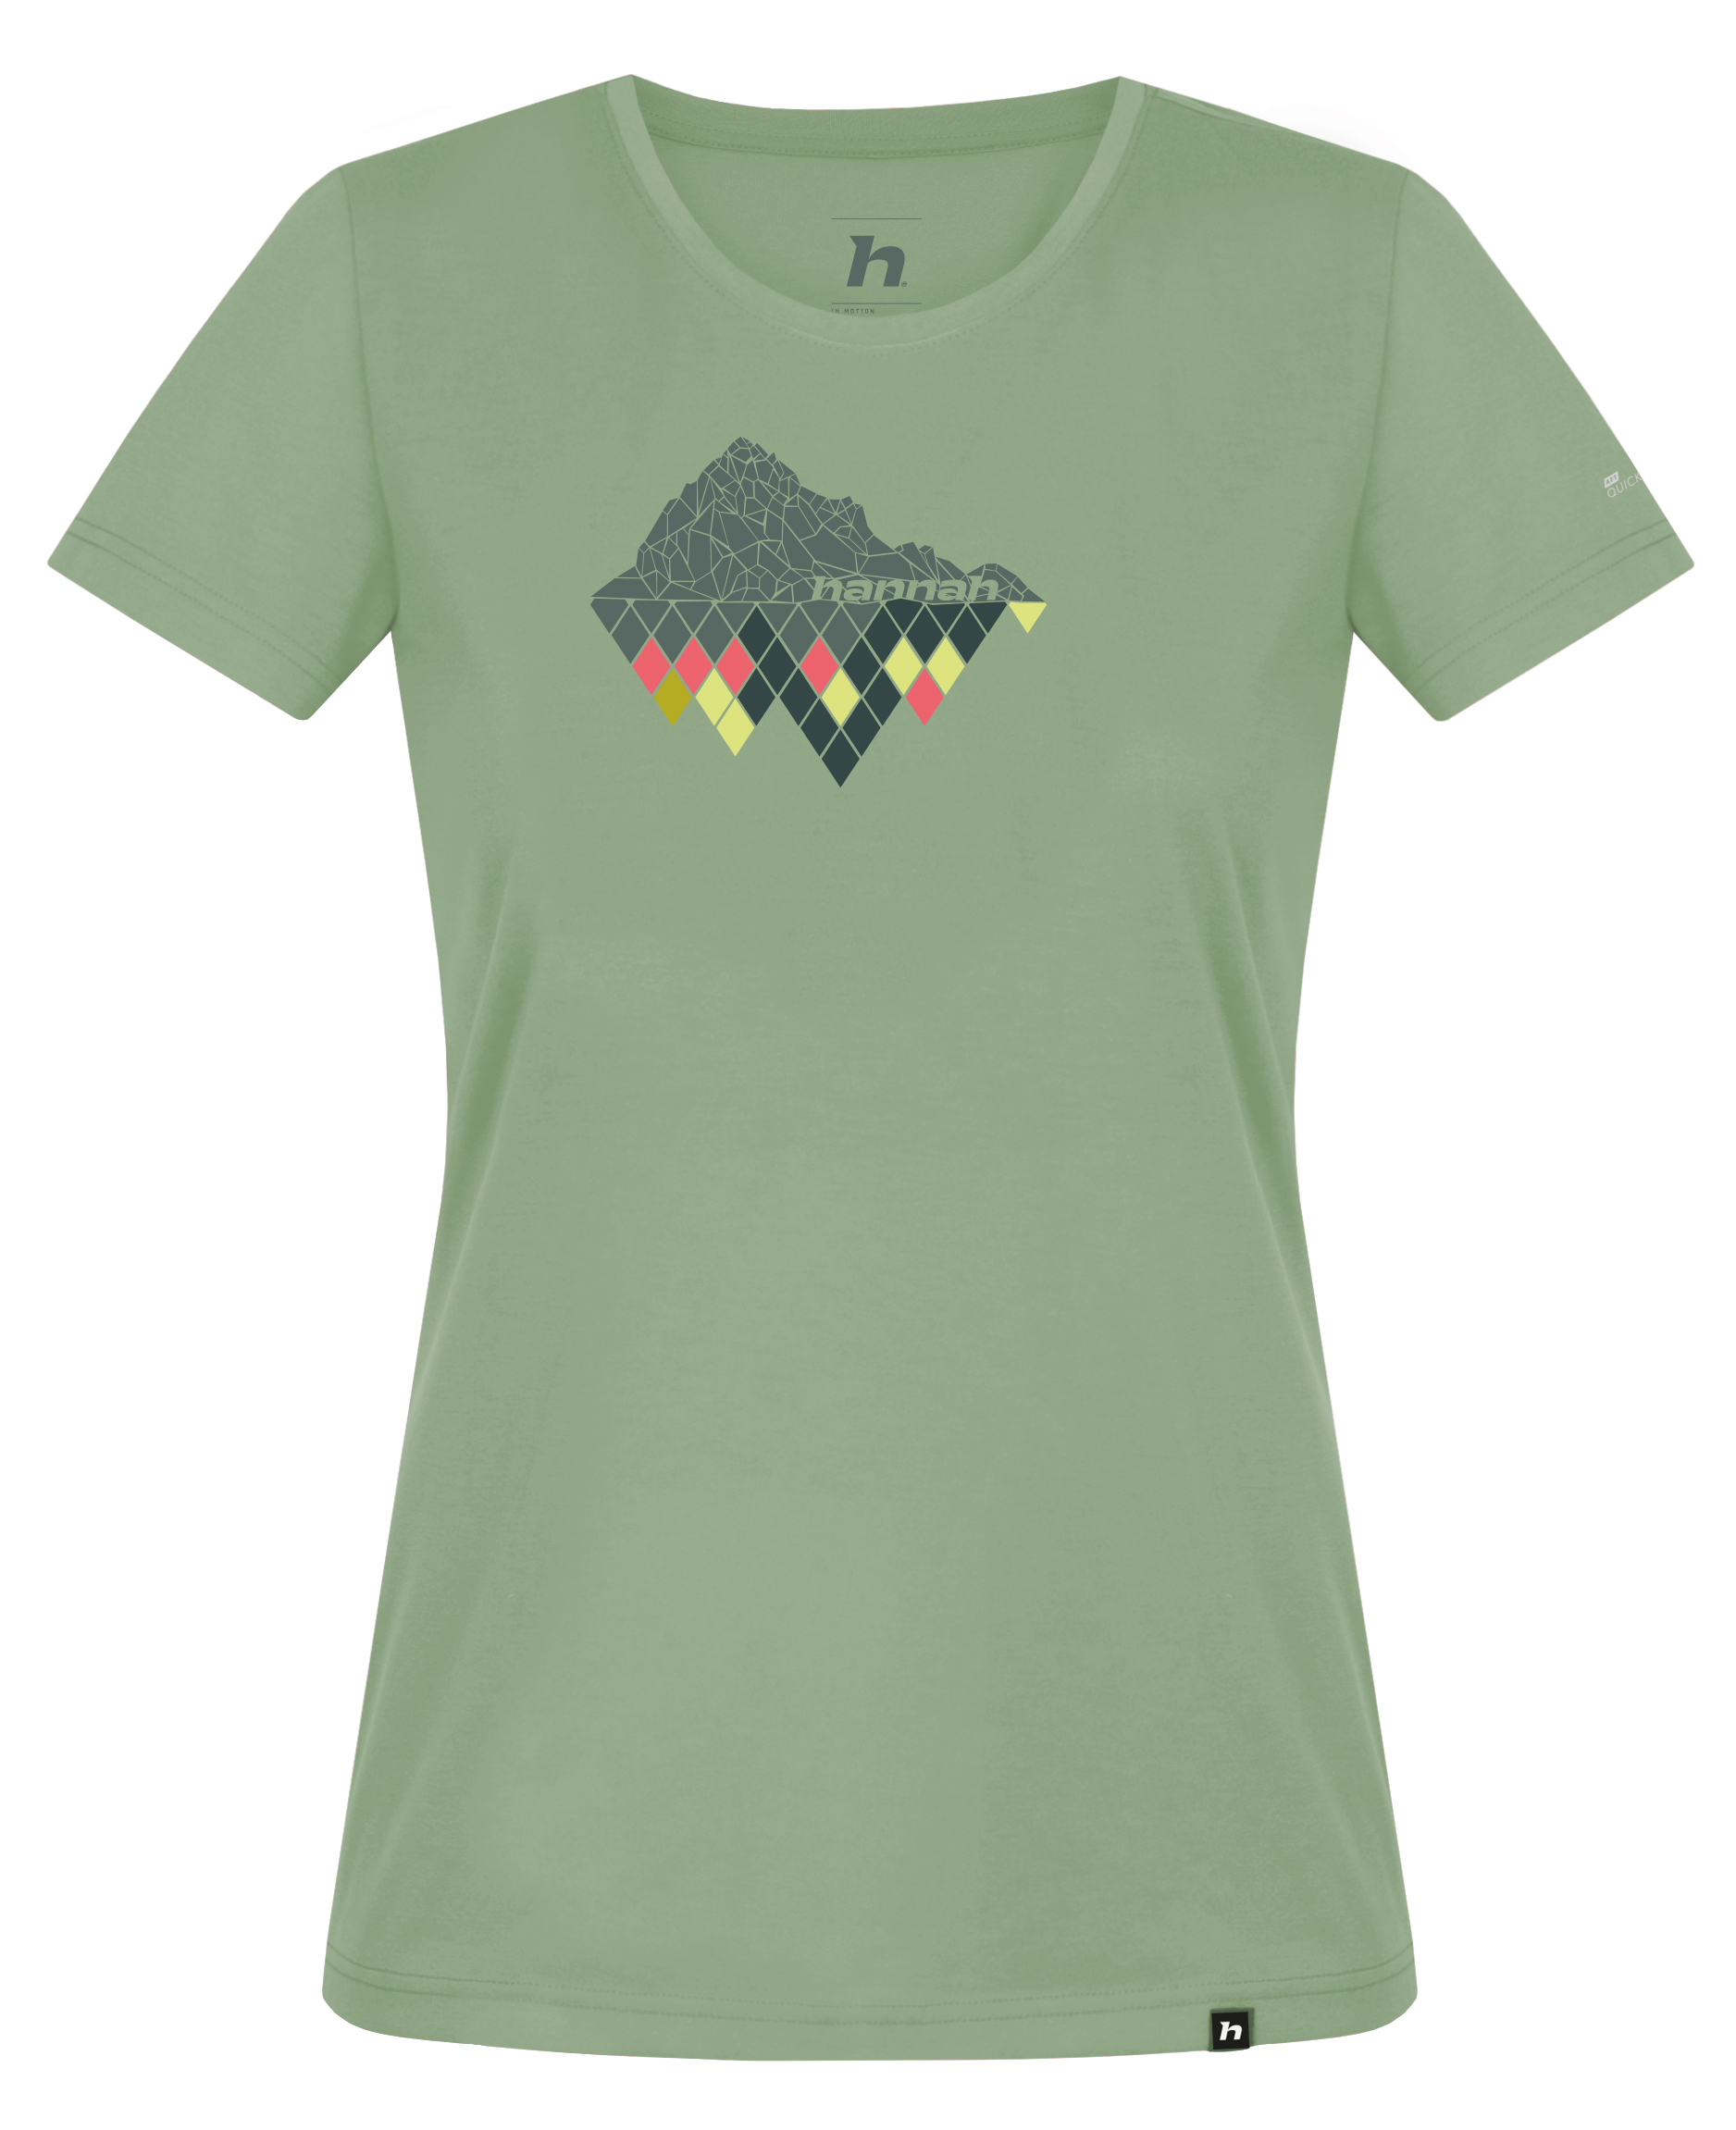 Hannah CORDY smoke green Velikost: 36 dámské tričko s krátkým rukávem